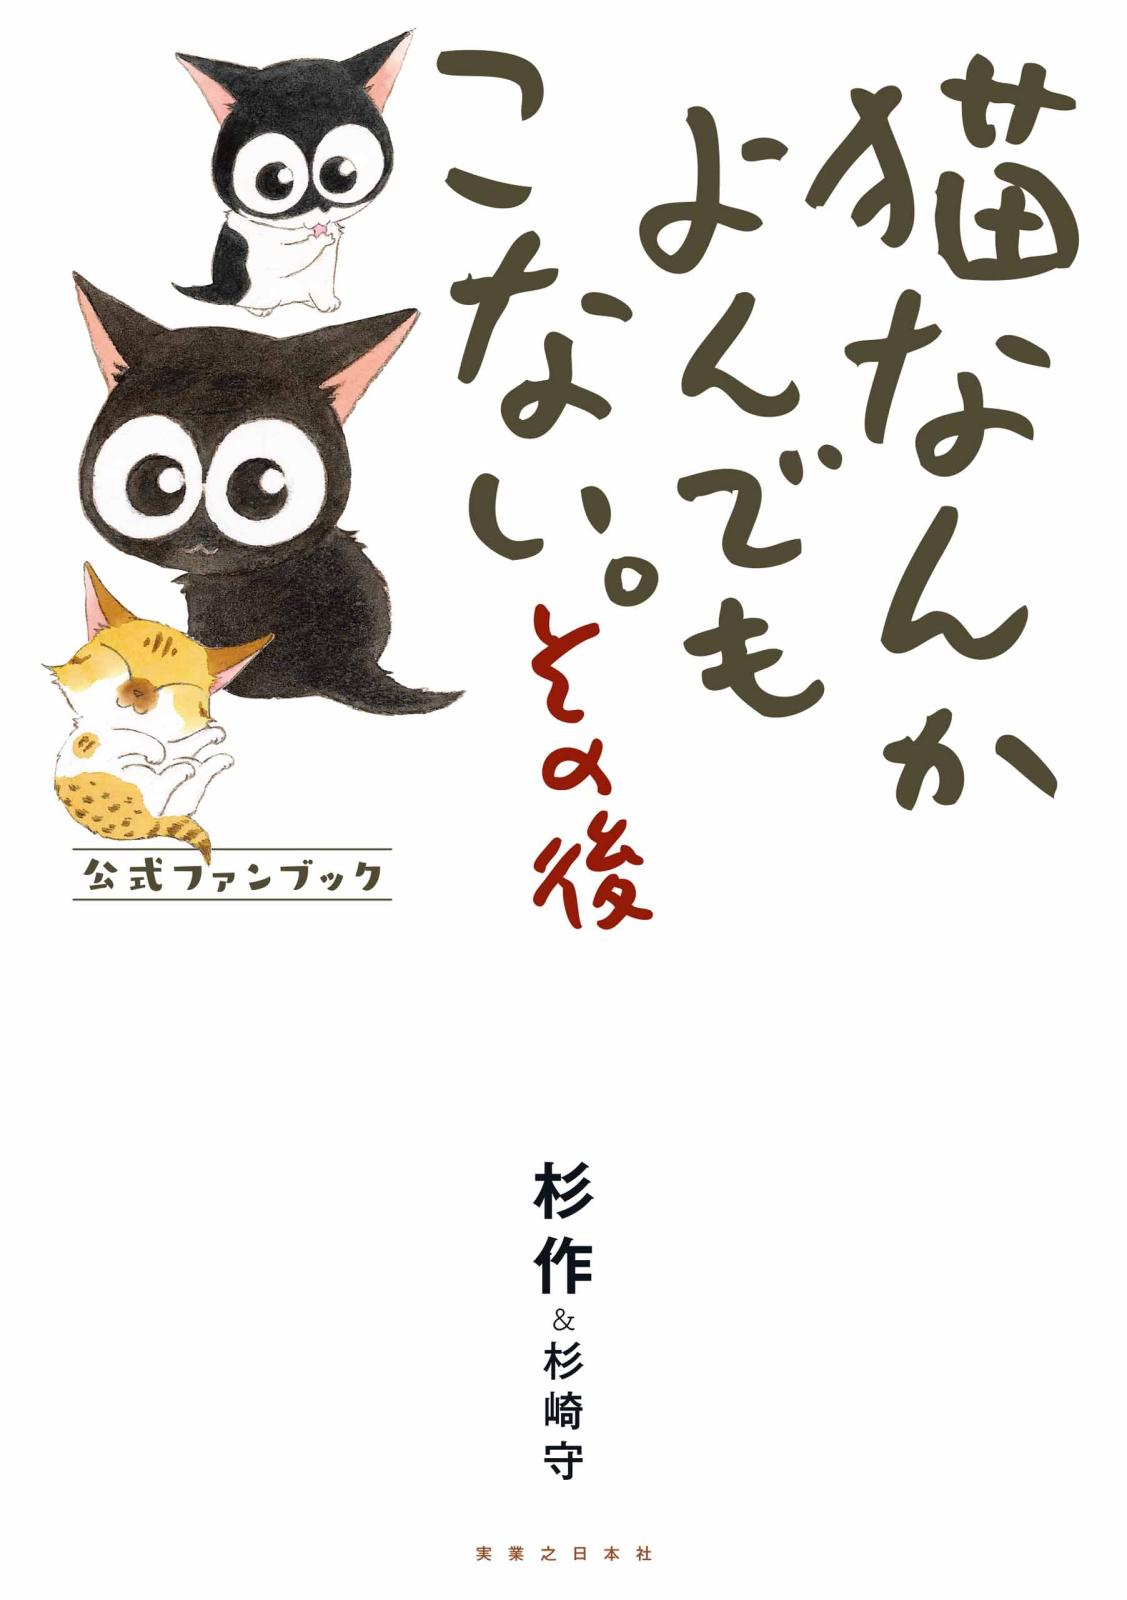 映画 猫よん に猫好き代表 中川翔子 鈴木砂羽 いくえみ綾 ますむらひろしがコメント Music Jpニュース